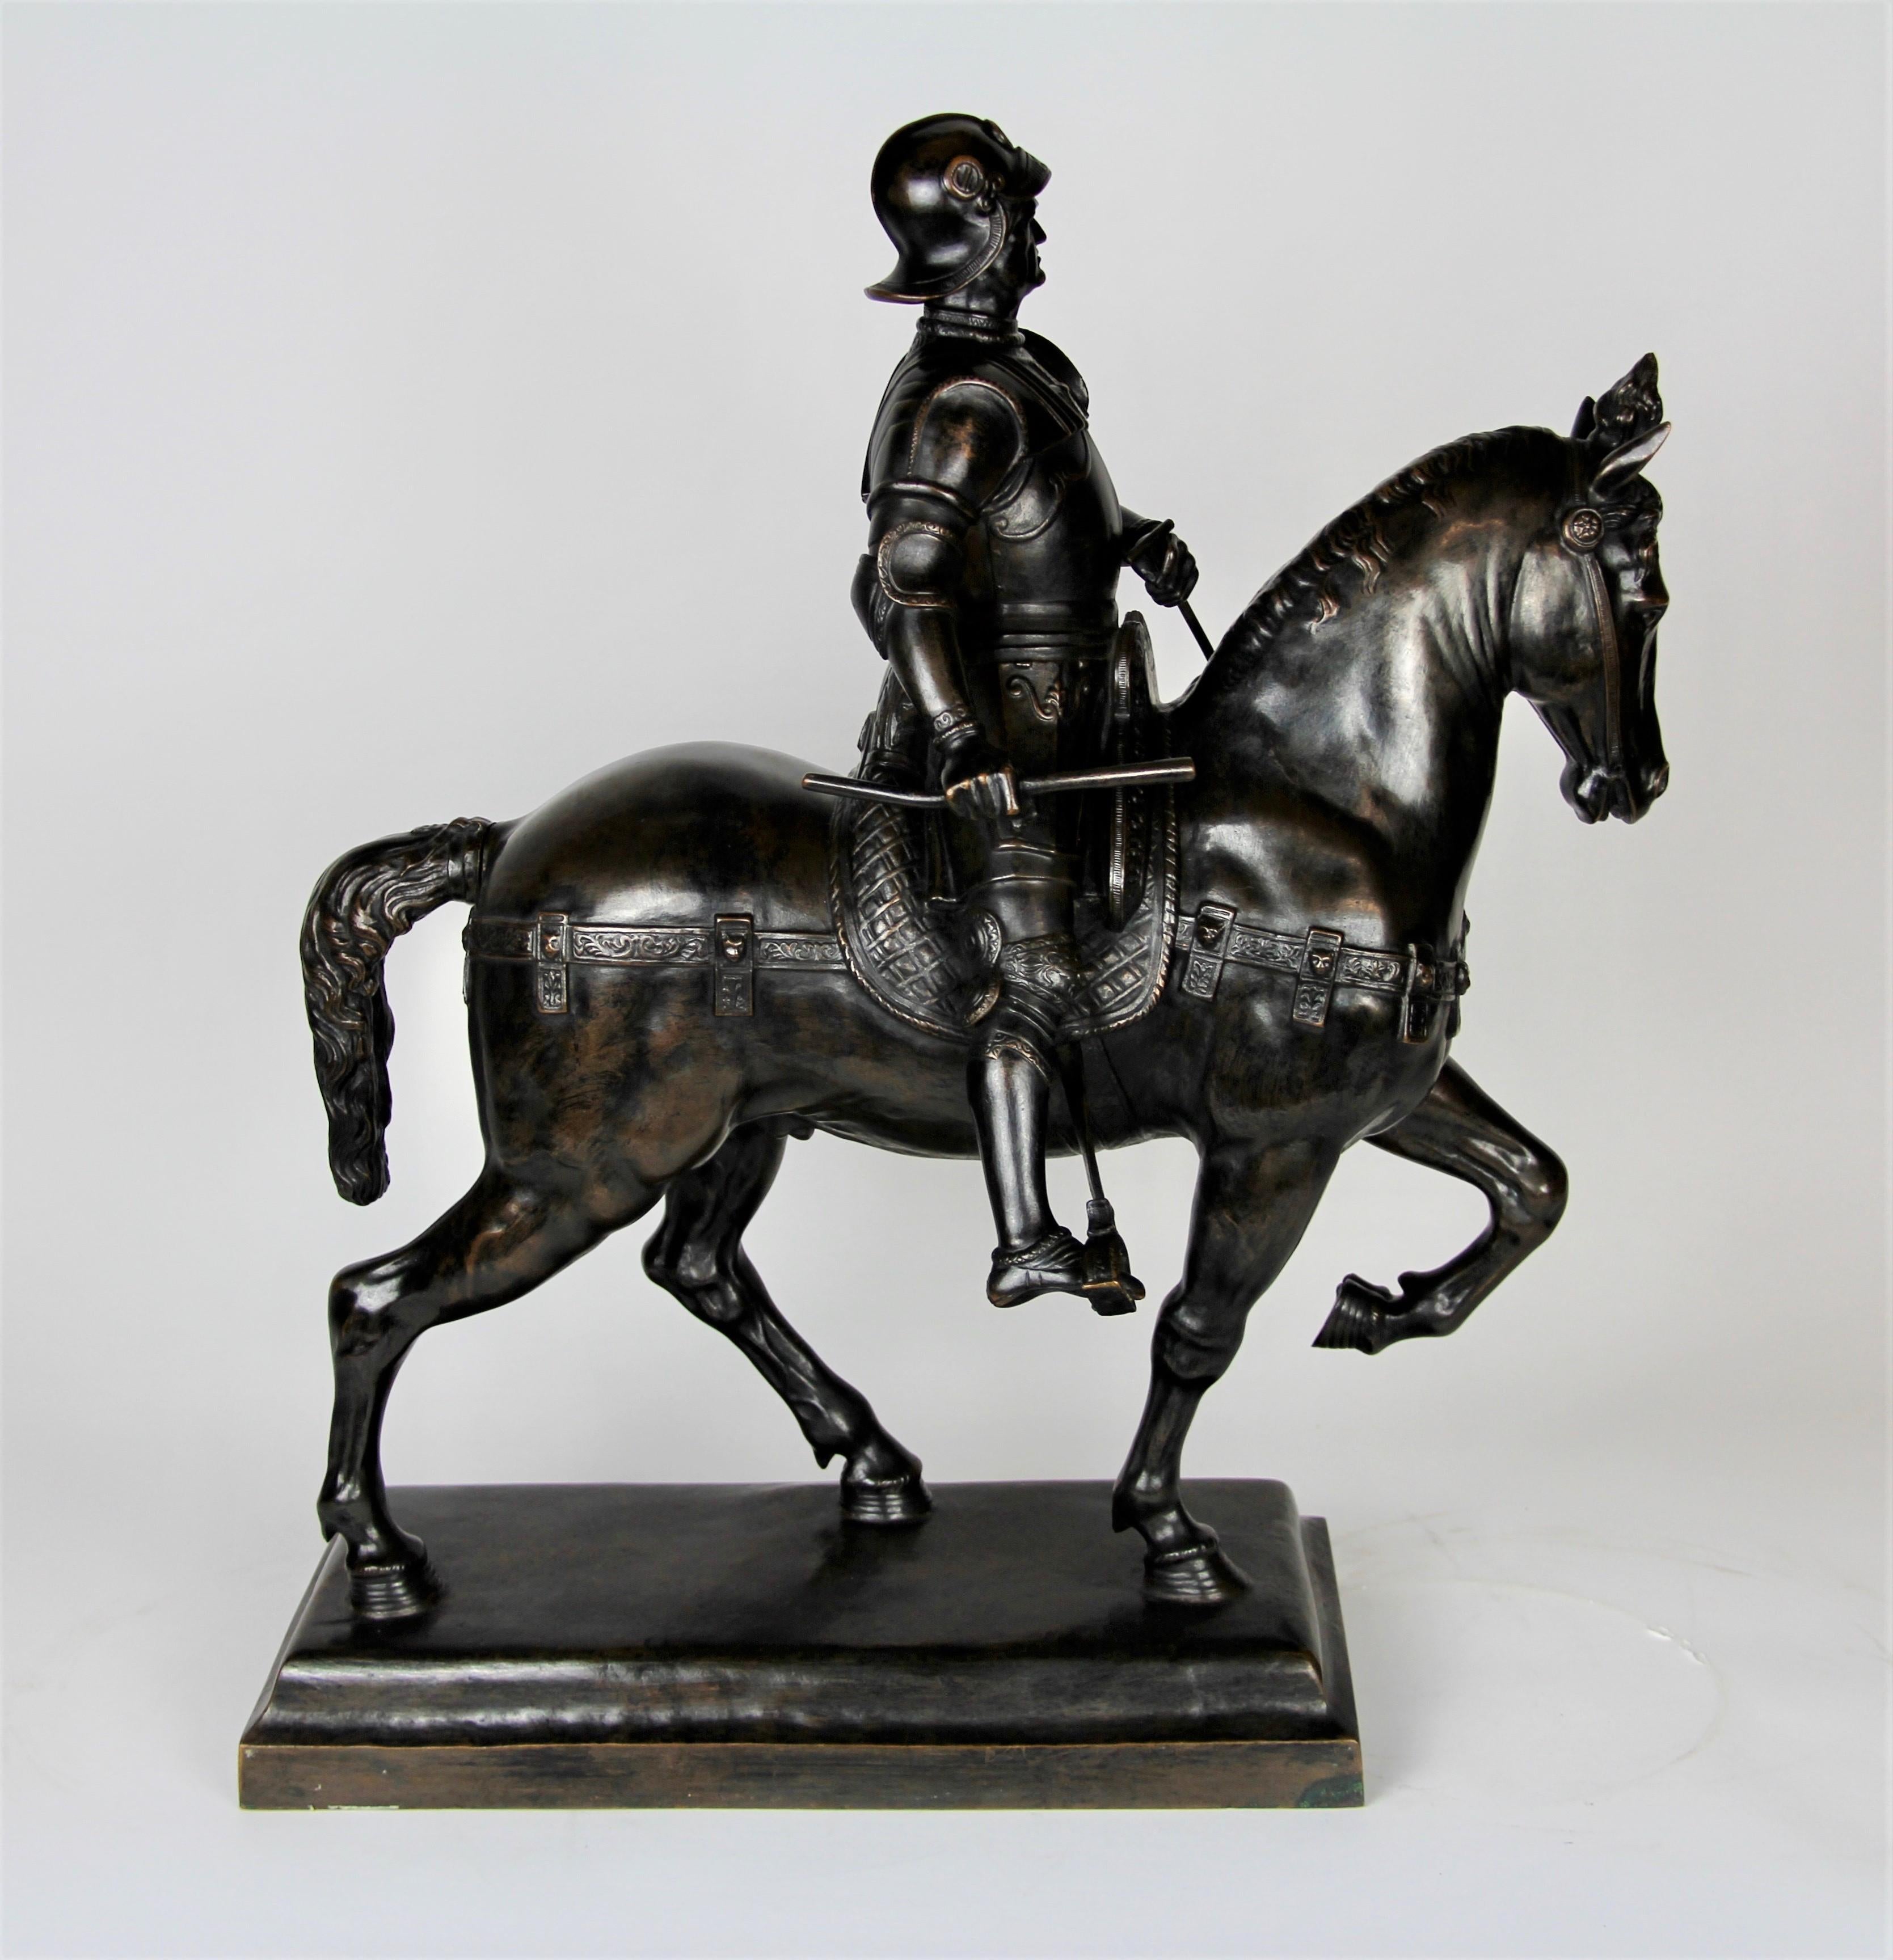 Eine fabelhafte und große patinierte Bronzefigur eines Soldaten auf einem Pferd. Schön gegossen und gut patiniert mit einer dunkelbraunen Patina. Der Soldat ist auf einem Pferd sitzend zu sehen, schön modelliert und mit handgeschnittenen Details.